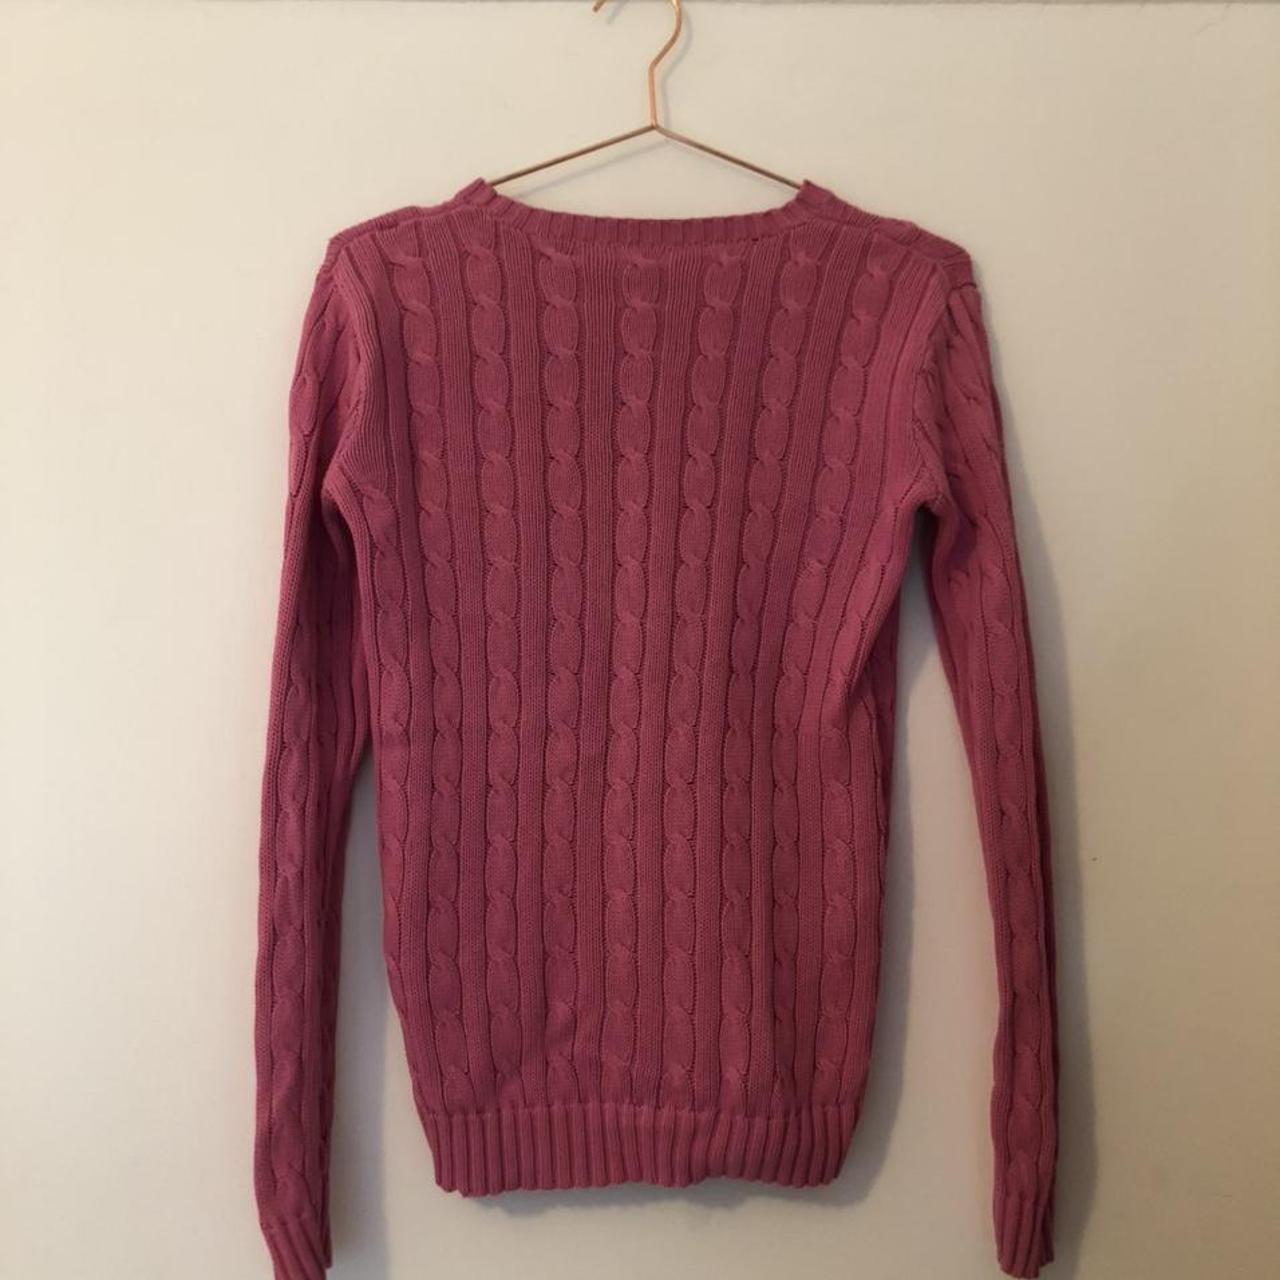 pink ralph lauren knitted jumper. Size small.... - Depop